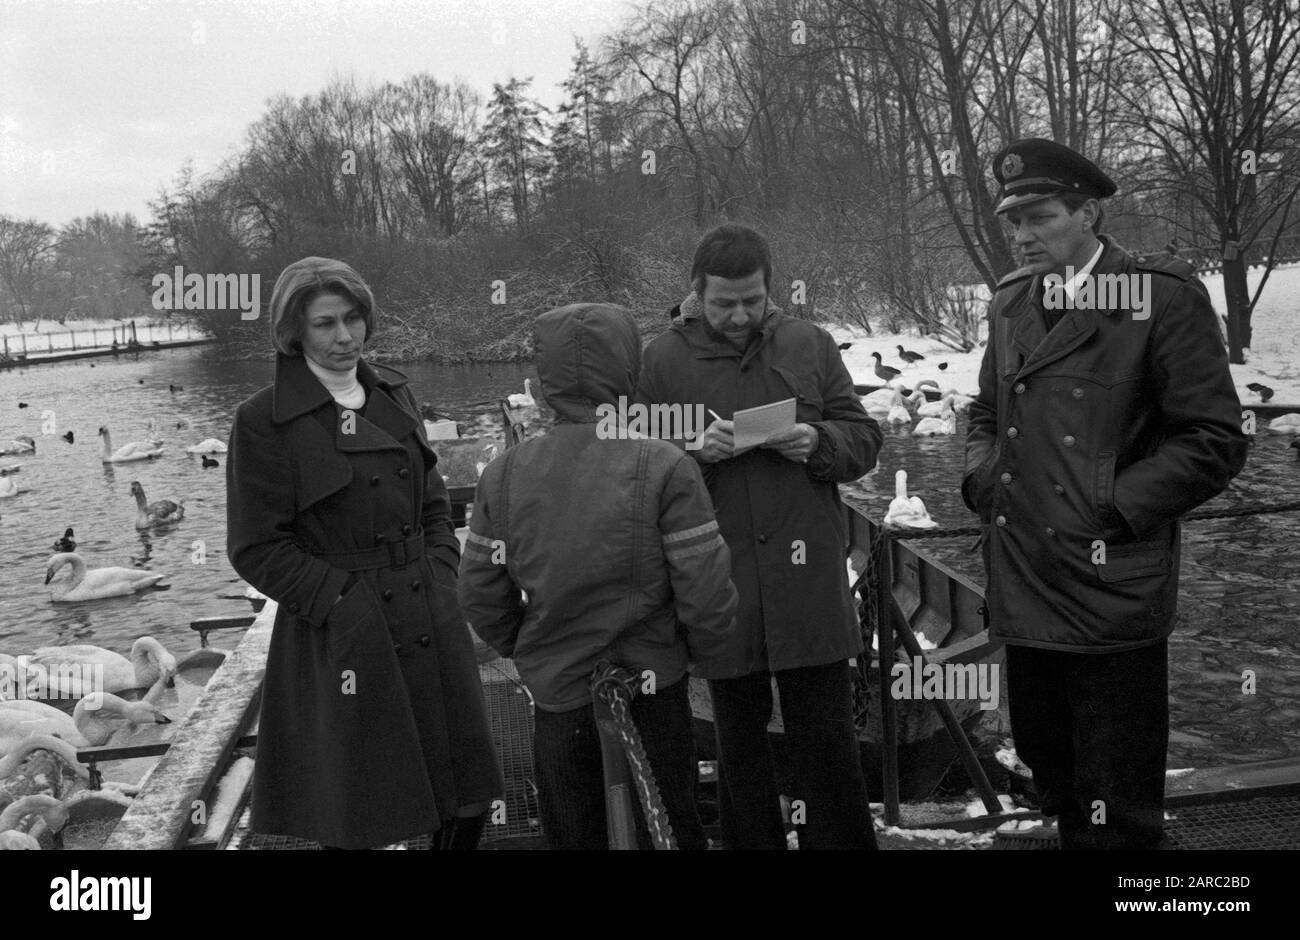 Der Schwanenvater Harald Niess (Links) kümmert sich um die Alsterschwäne in Hamburg, Deutschland 1970er Jahre. Stockman Harald Niess (links), genannt "Schwanenvater", der in den 1970er Jahren in Hamburg die Schwäne der Alster versorgt und betreut. Stockfoto